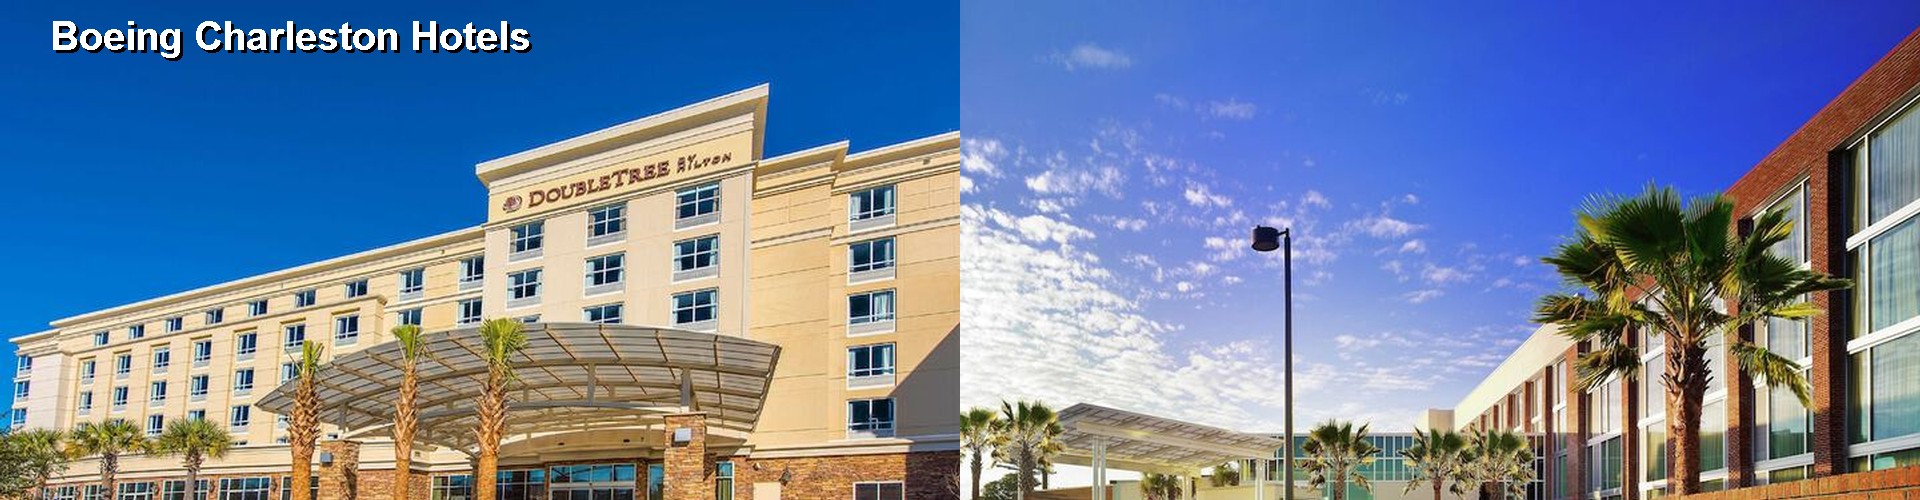 5 Best Hotels near Boeing Charleston